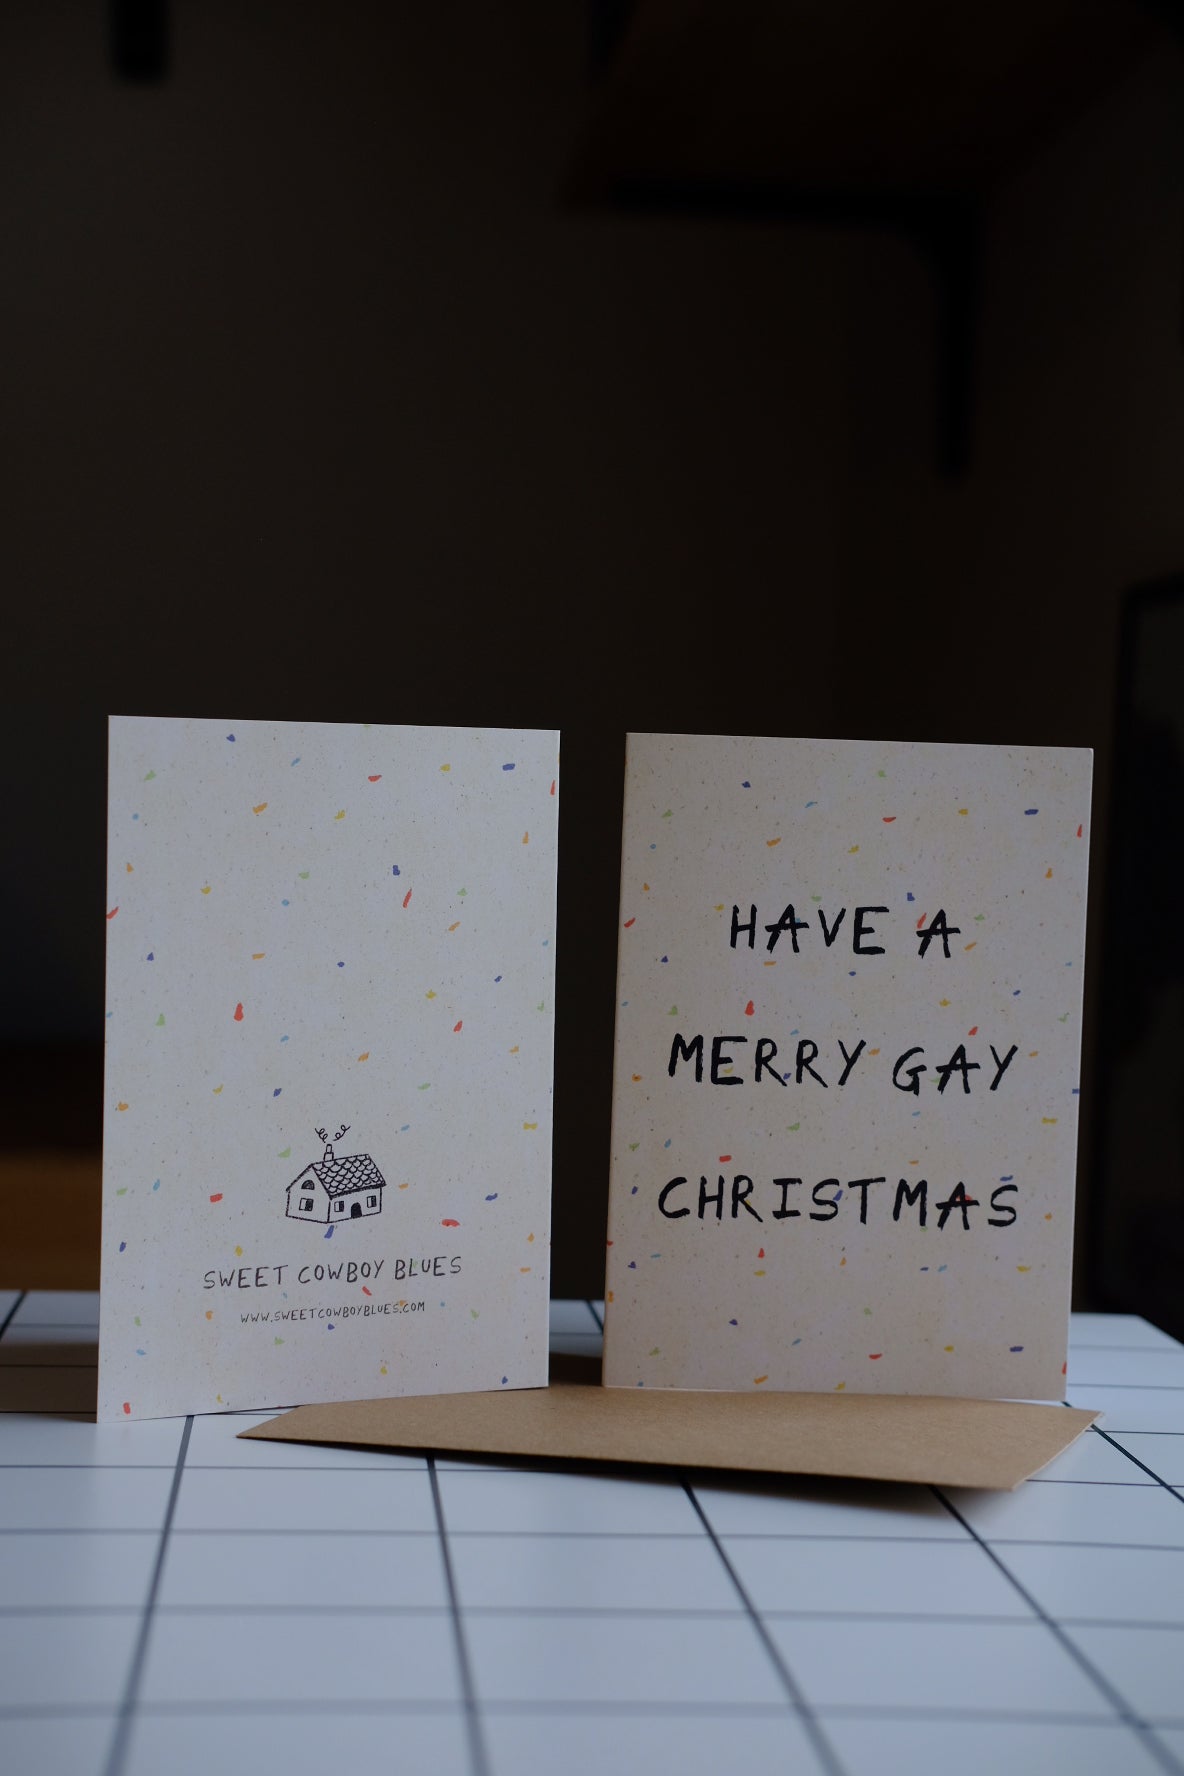 Merry Gay Greetings Card